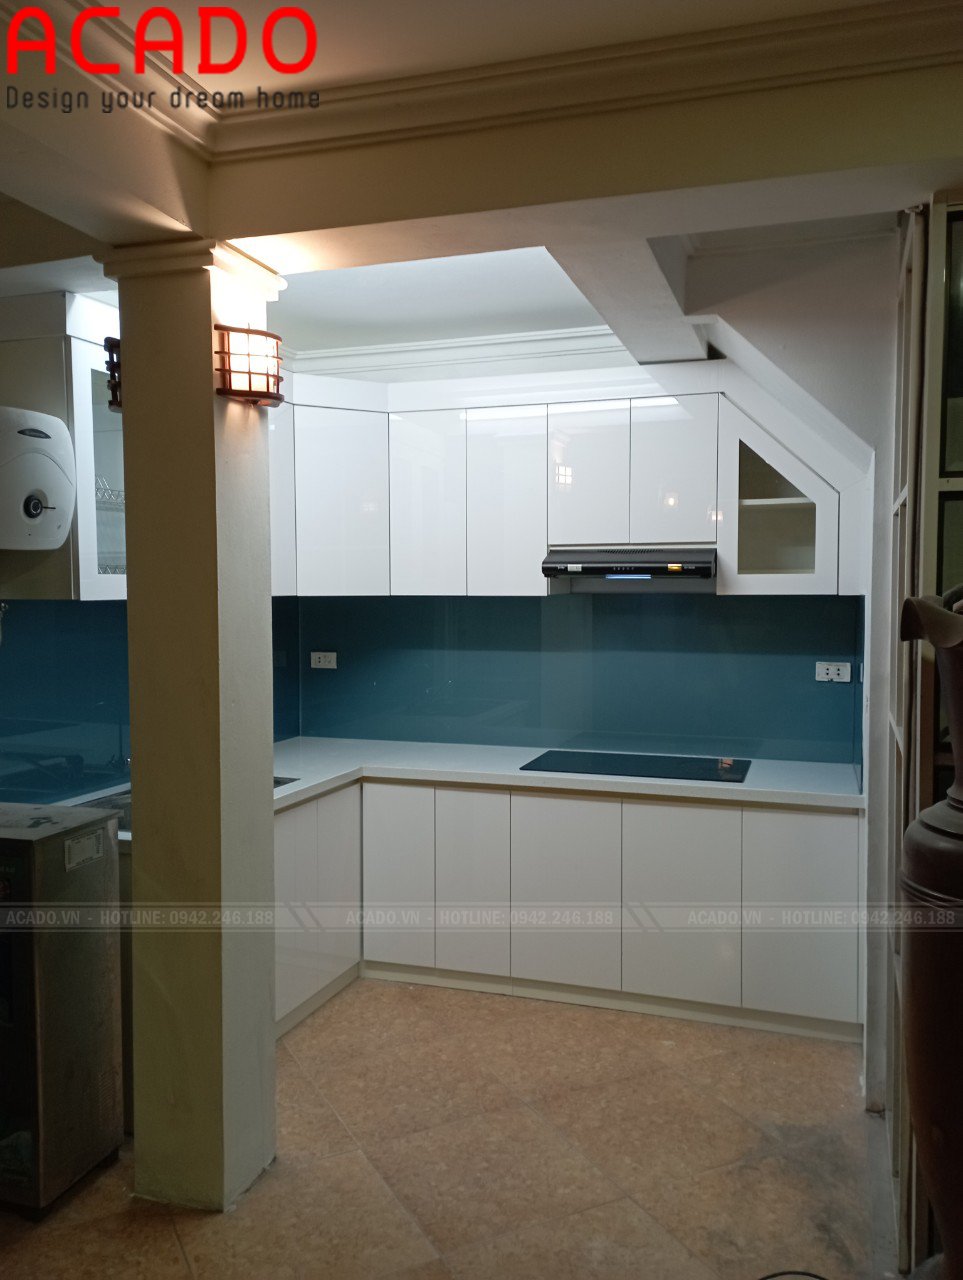 Kính bếp màu xanh dương nổi bật tảo điểm nhấn - làm tủ bếp tại Ngô Gia Tự